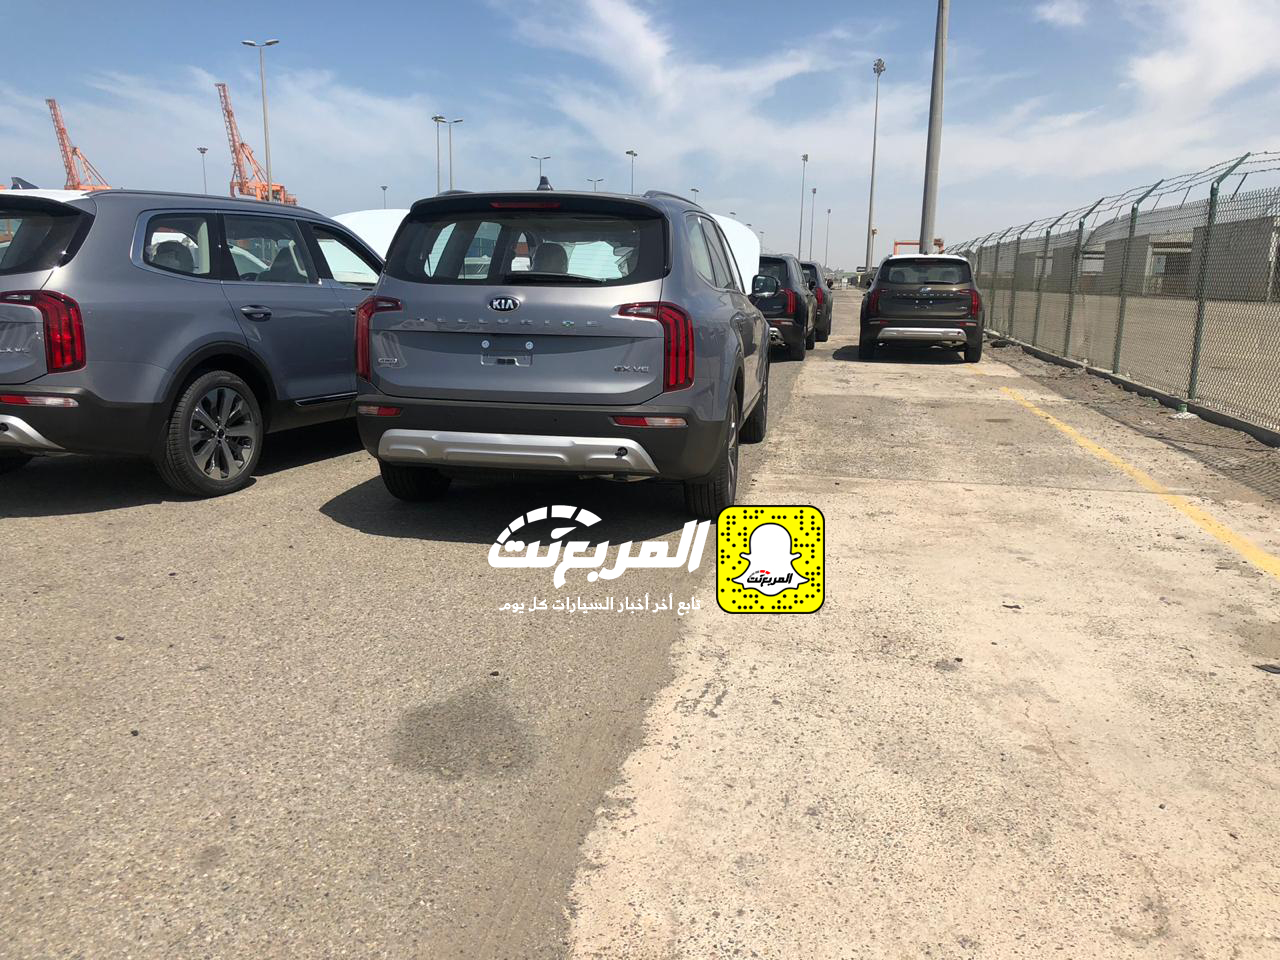 "بالصور" وصول كيا تيلورايد 2020 الجديدة الى السعودية اكبر SUV من كيا + موعد البيع الرسمي 5